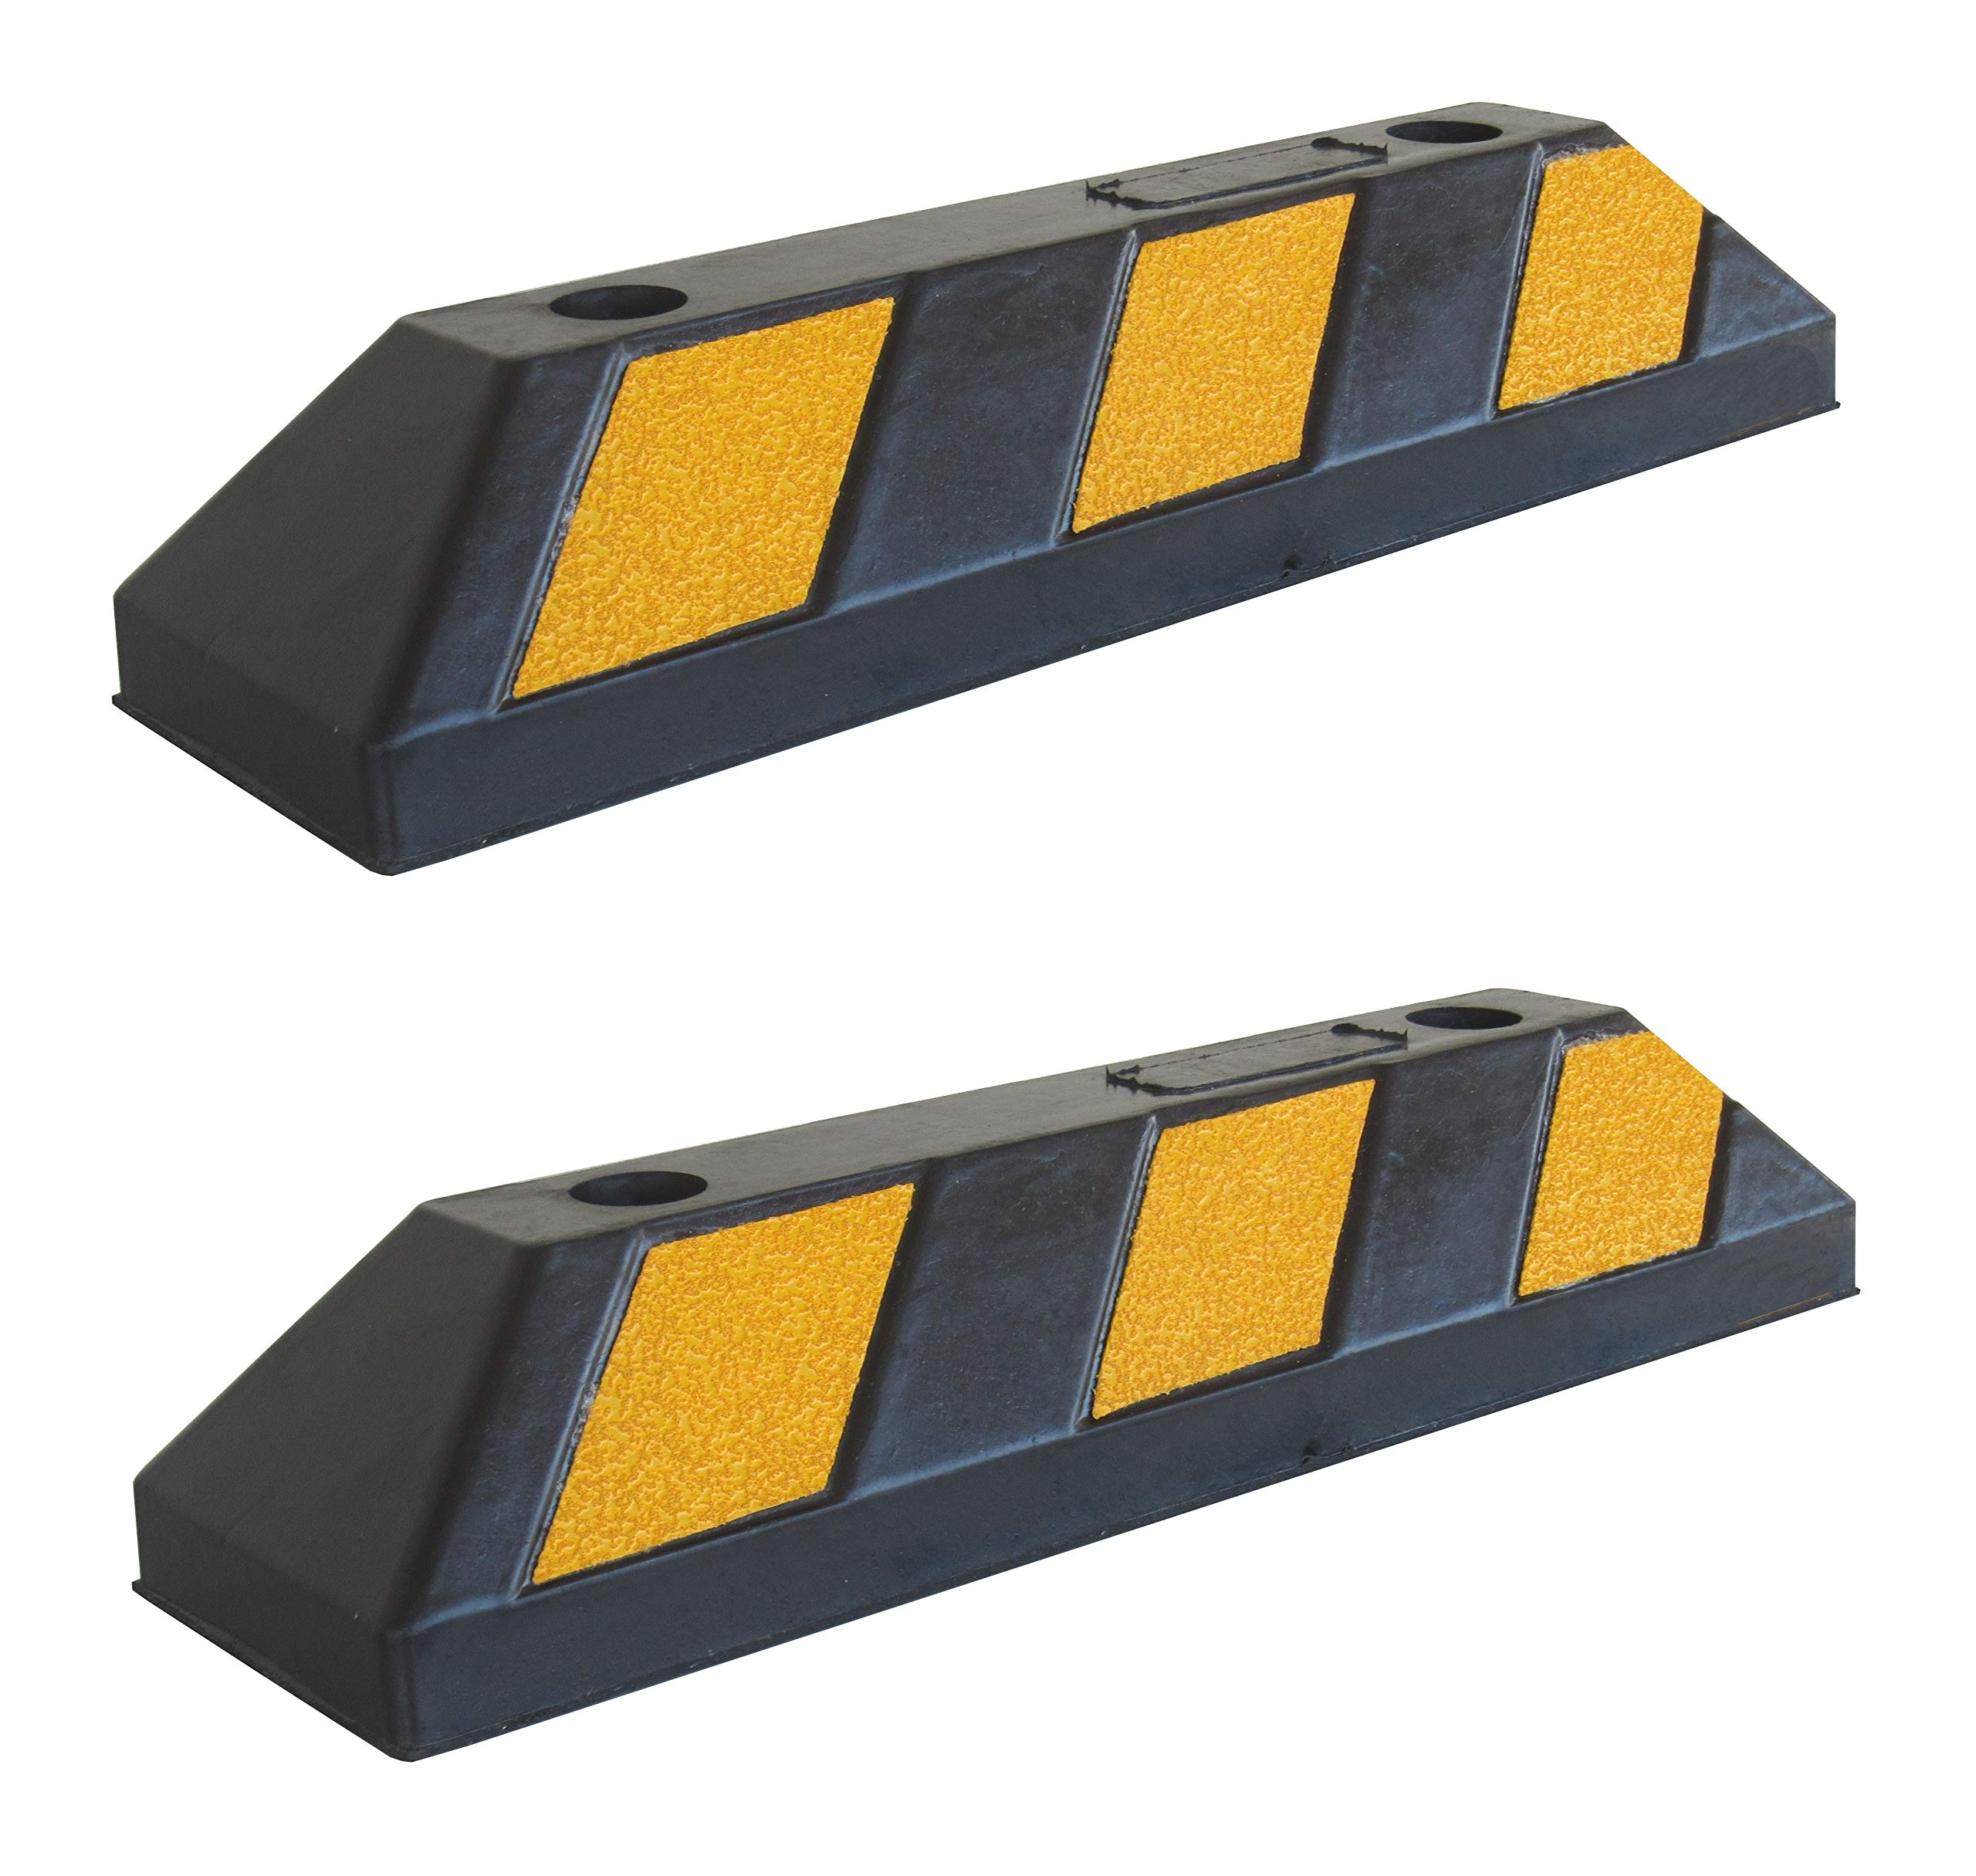 SNS SAFETY LTD Gummi Radstopp-Parkplatzbegrenzung für Parkplätze und Garagen, Farbe Schwarz-Gelb, Abmessungen 55x15x10 cm (2er Pack)